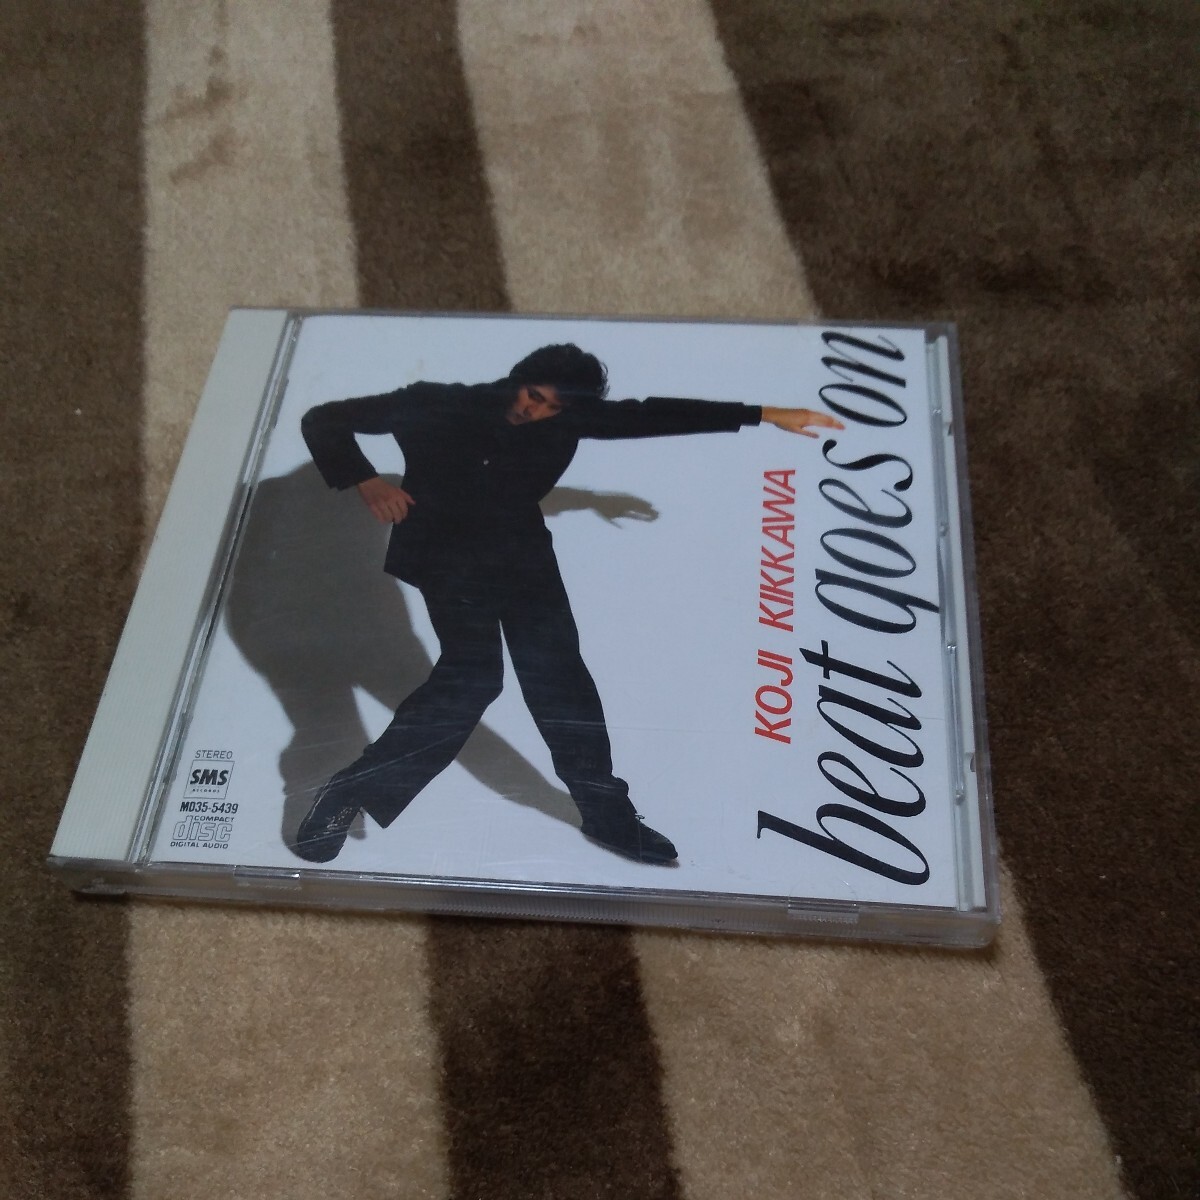 CD 吉川晃司 ベスト・アルバム BEAT GOES ON モニカ サヨナラは八月のララバイ ラ・ヴィアンローズ にくまれそうなNEWフェイス MD35-5439_画像1